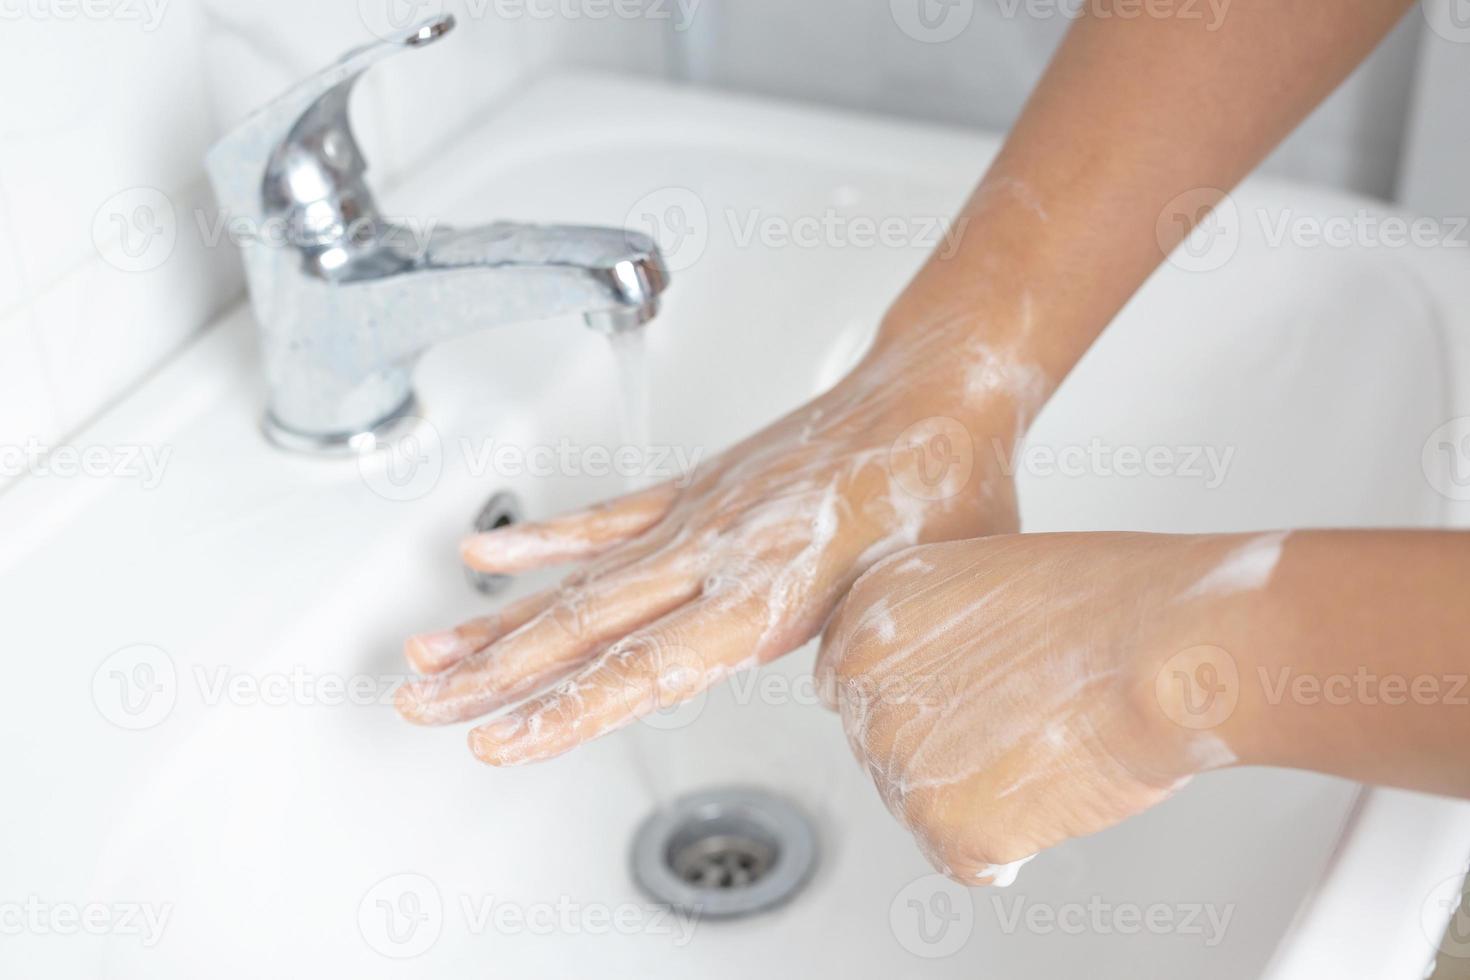 sempre lave as mãos depois de sair do banheiro para evitar vírus. foto